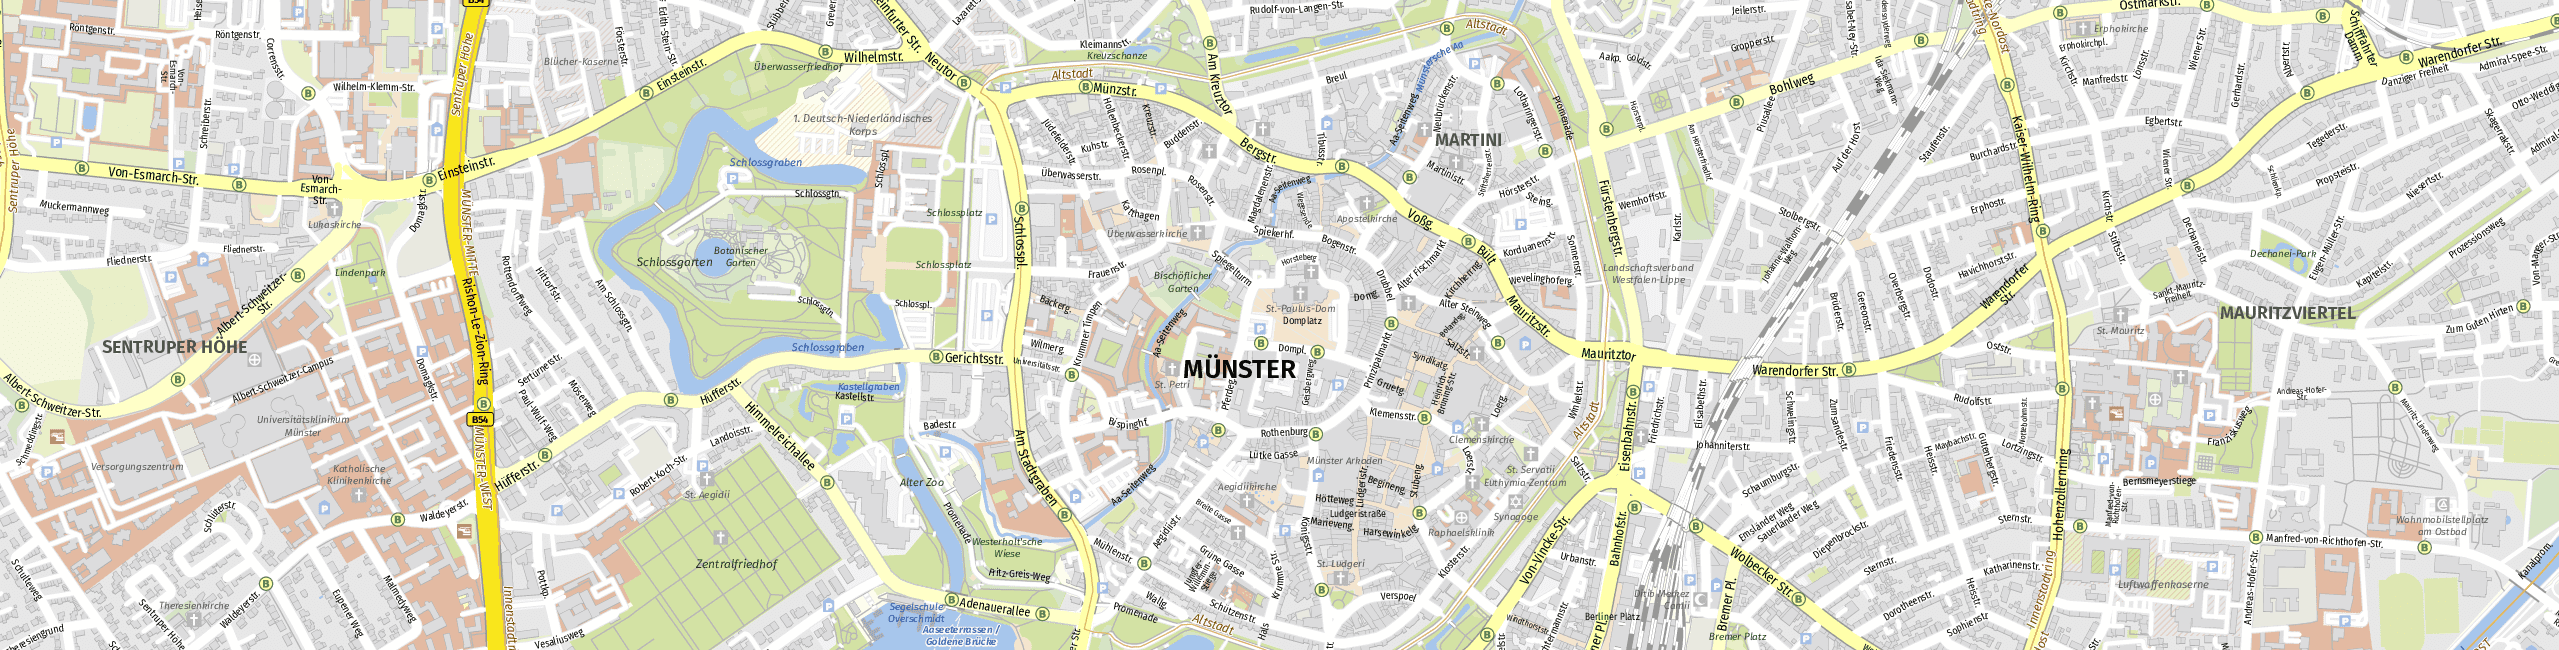 Stadtplan Münster zum Downloaden.